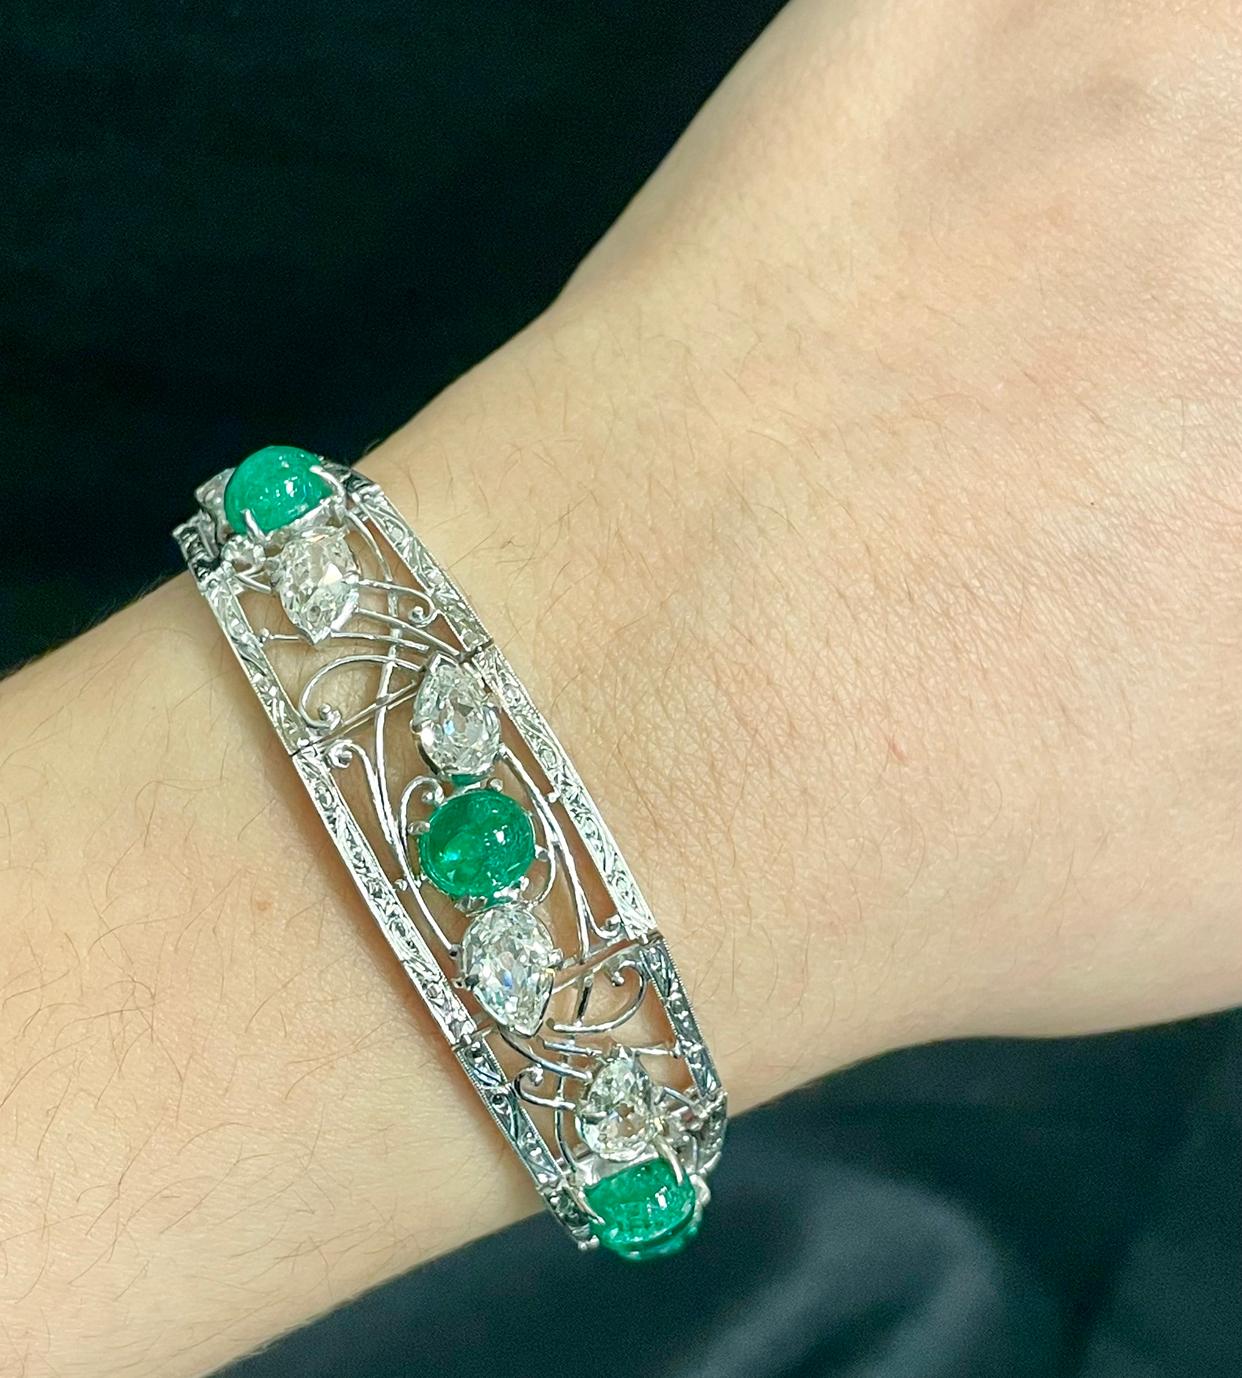 Armband mit Smaragd und Diamanten im Cabochon-Schliff

Art-déco-Armband aus Platin, besetzt mit fünf Cabochon-Smaragden und 12 paarweise angeordneten Diamanten. 

Metall-Typ: Platin 
Ungefähre Maße: 7